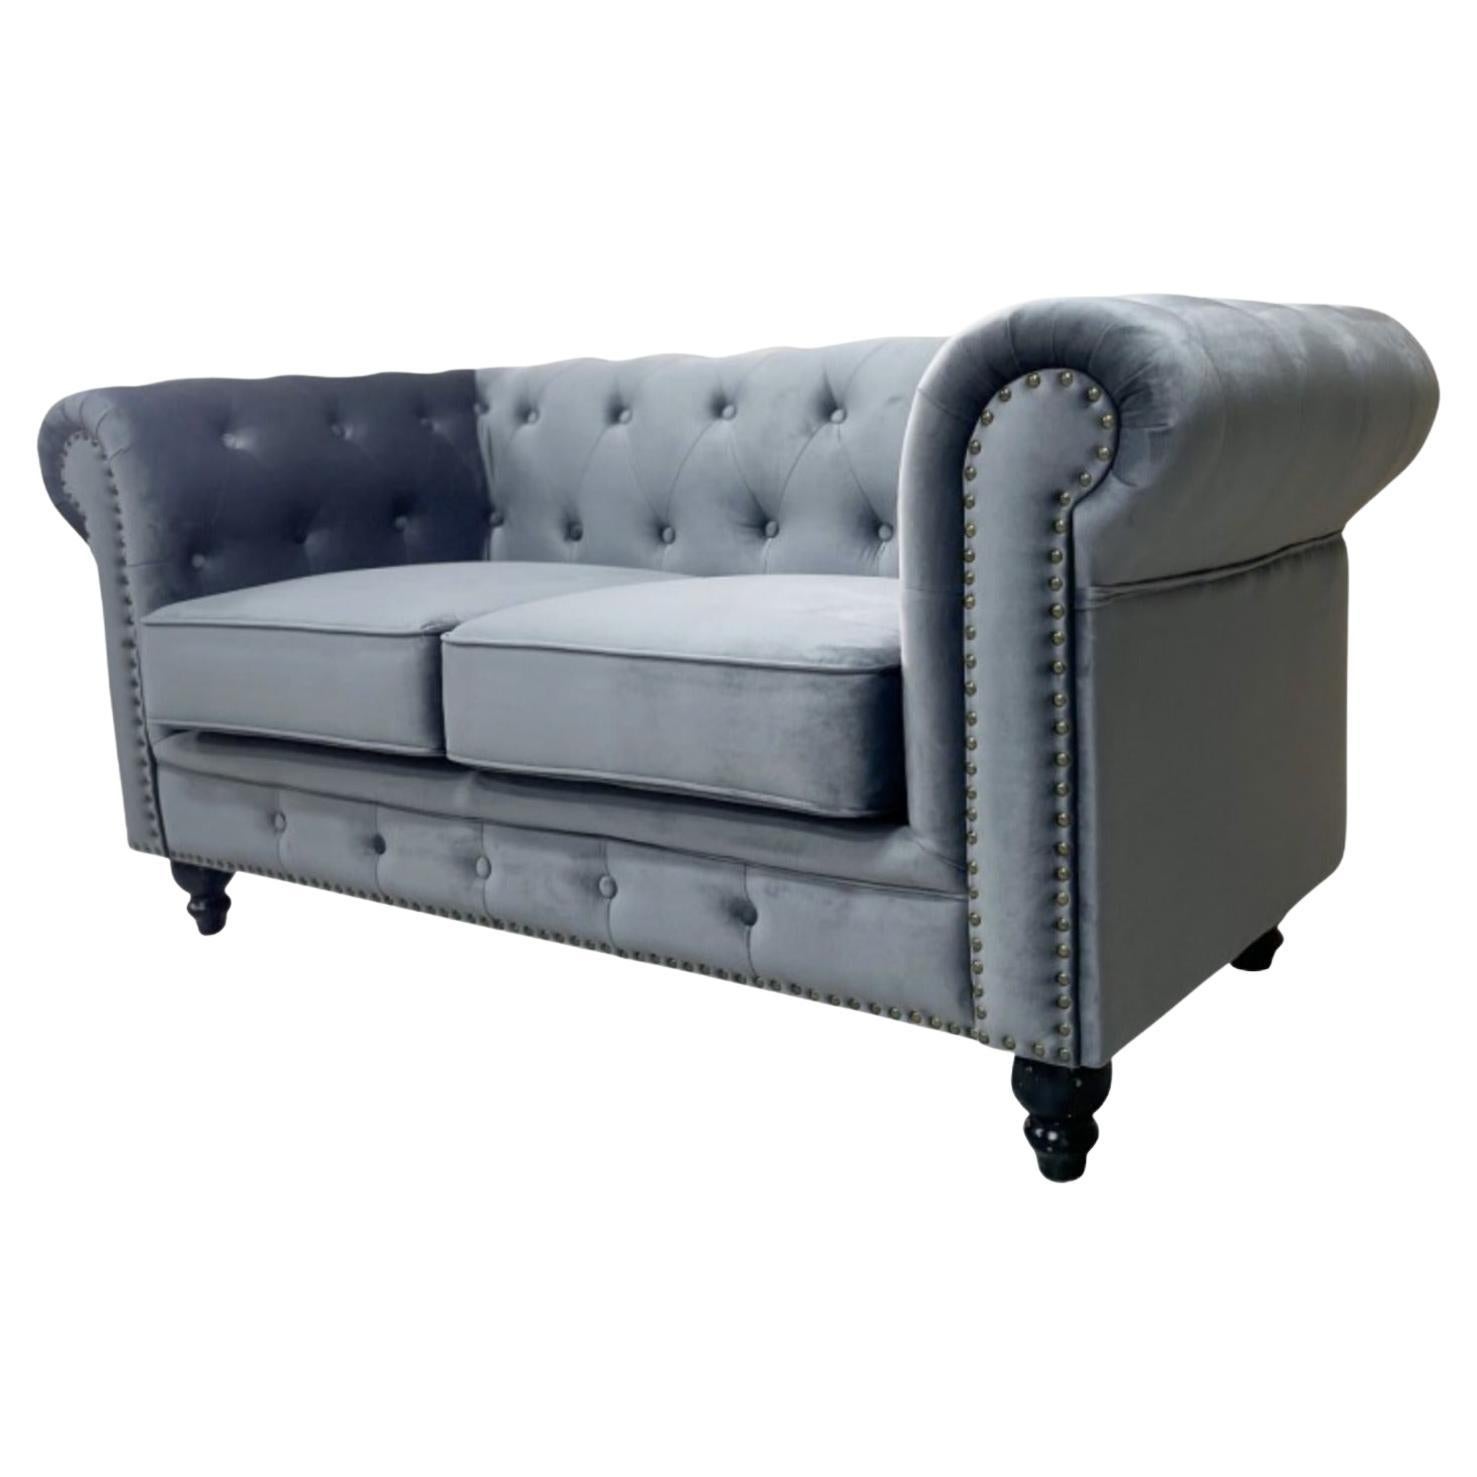 New Chester Premium 2 Seater Sofa, Gray Velvet Upholstery